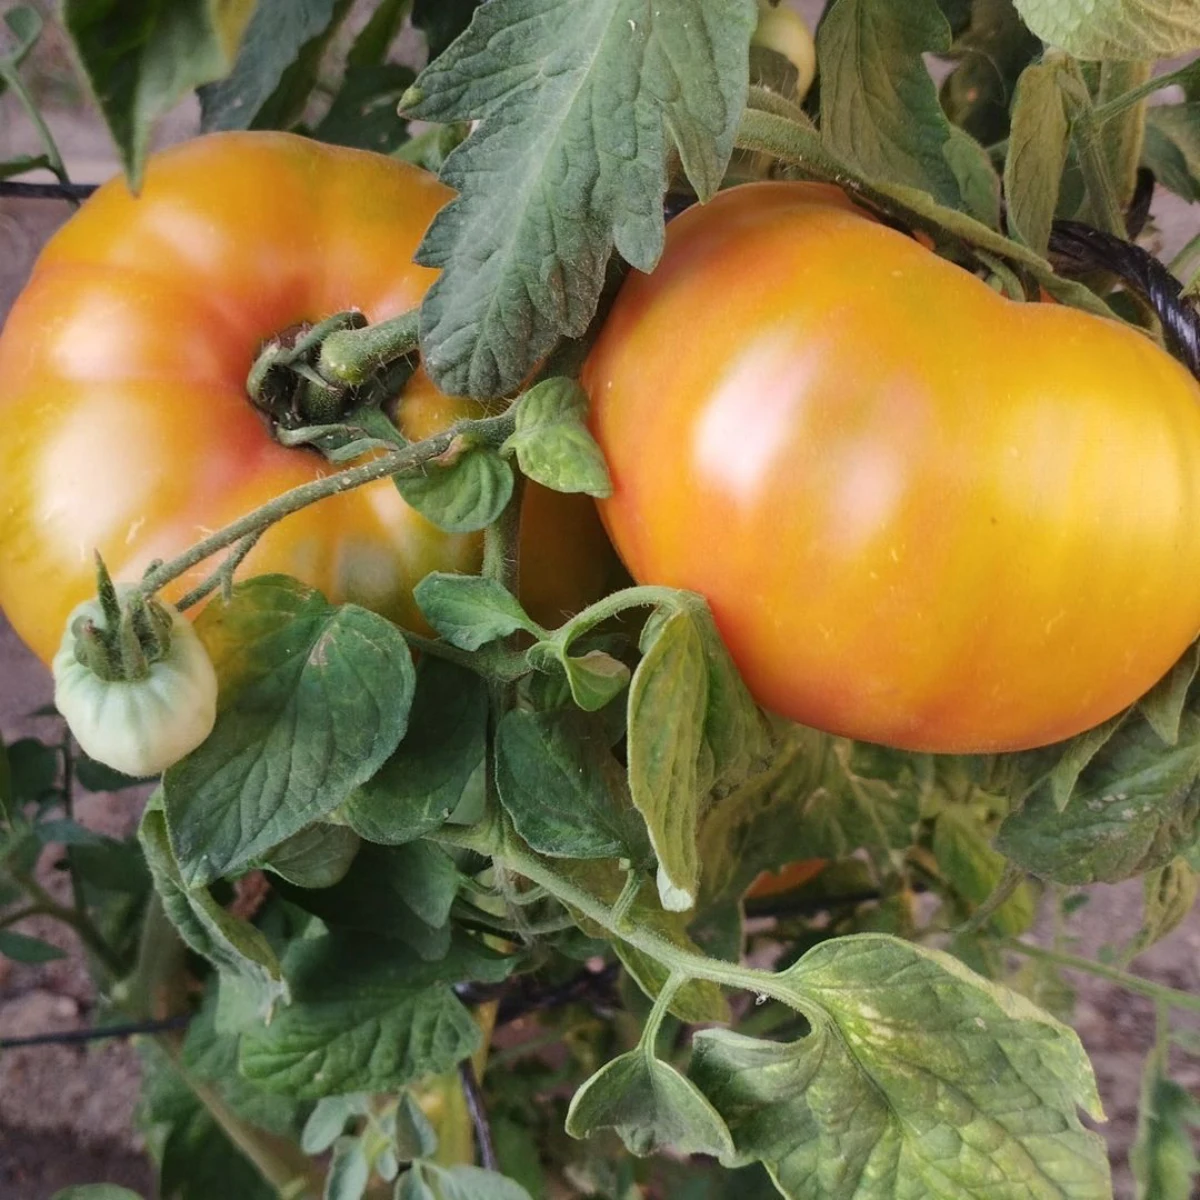 comment faire grossir les tomates naturellemnt tomates oranges